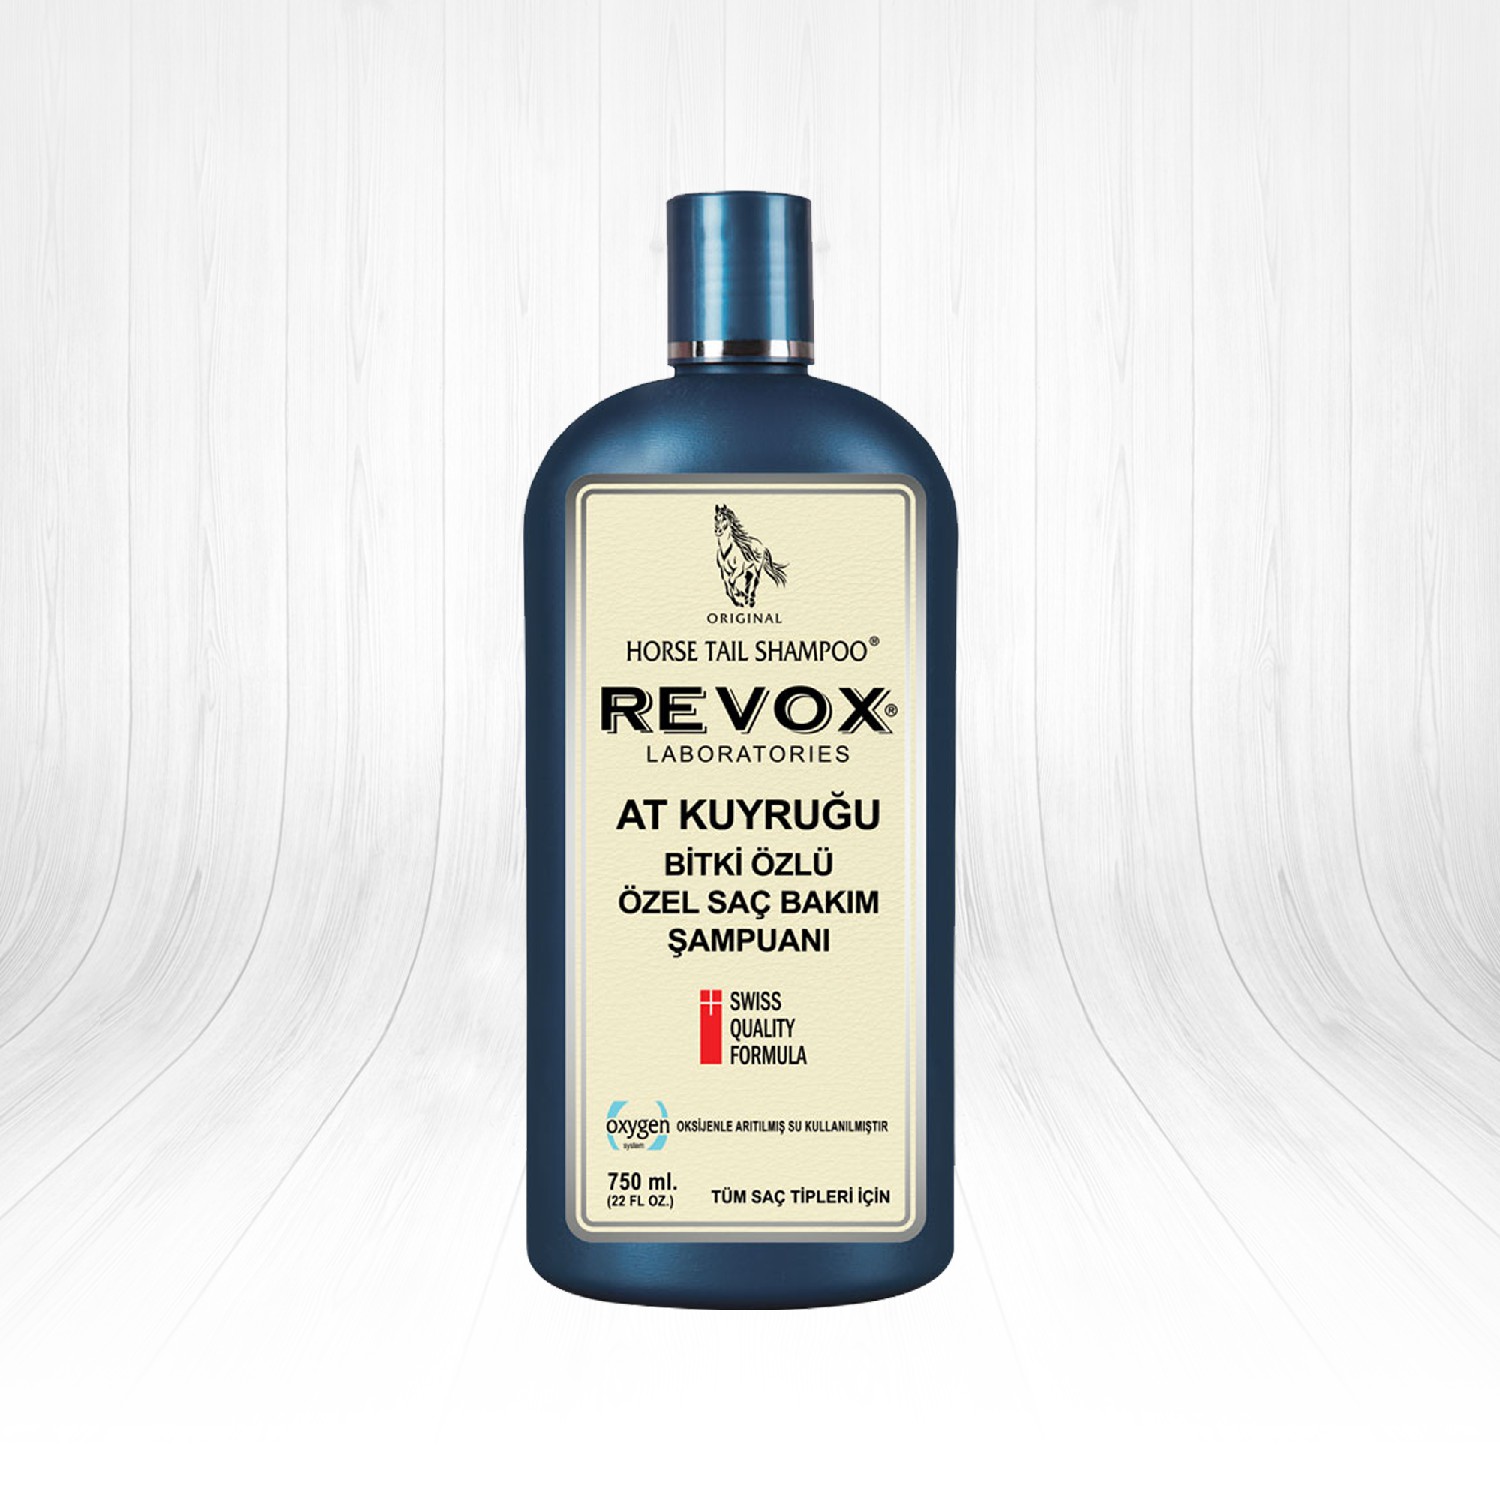 Revox At Kuyruğu Bitkisi Özlü Özel Saç Bakım Şampuanı